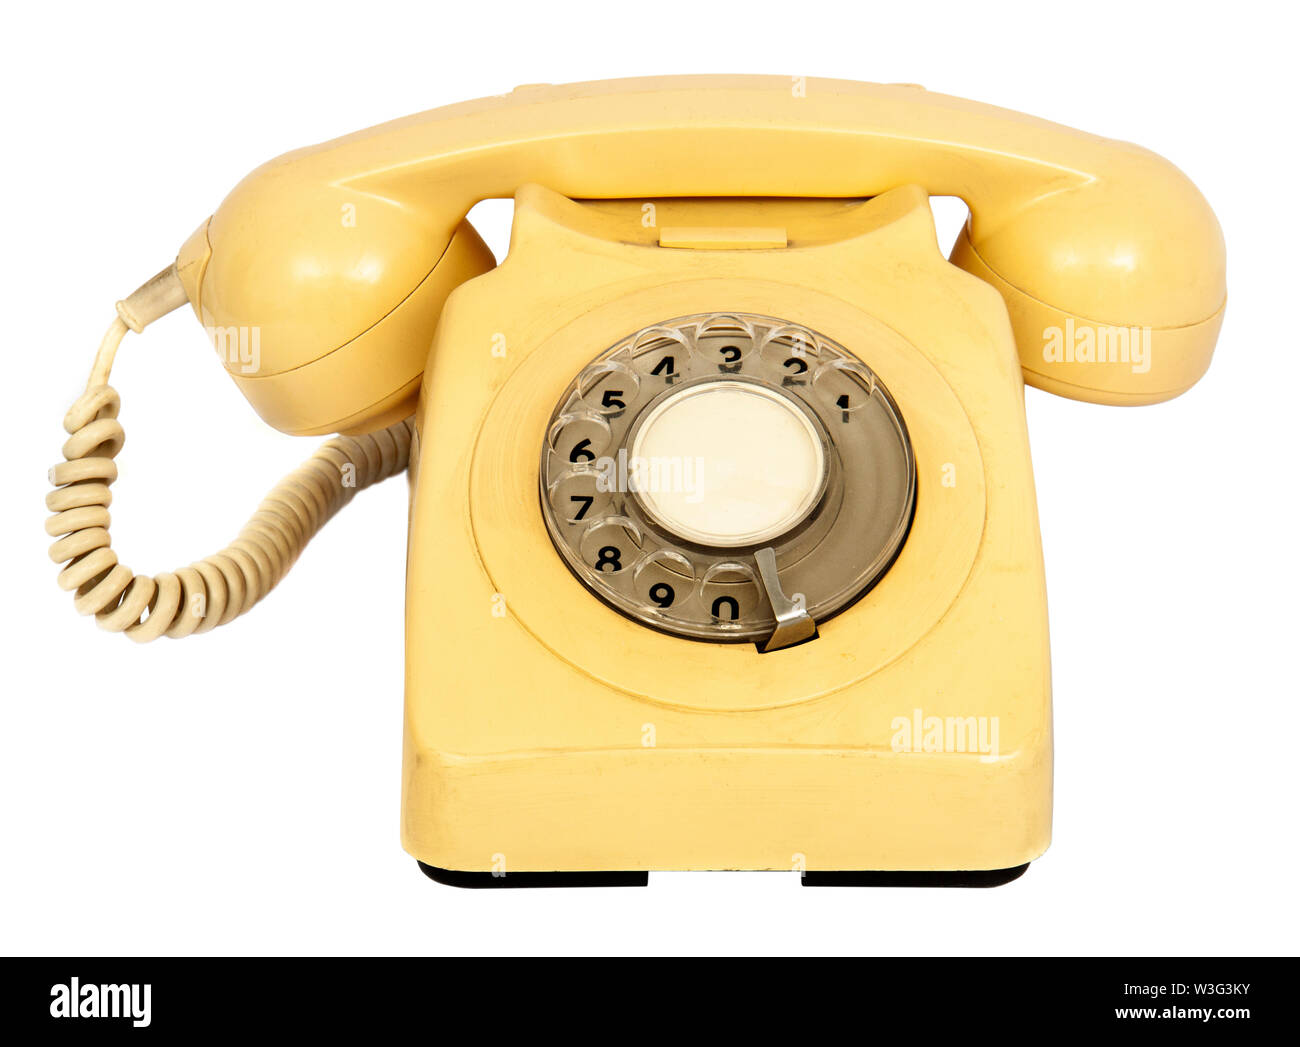 Vintage des années 80, la BPO 8746g de crème 24 téléphone analogique avec cadran rotatif Banque D'Images